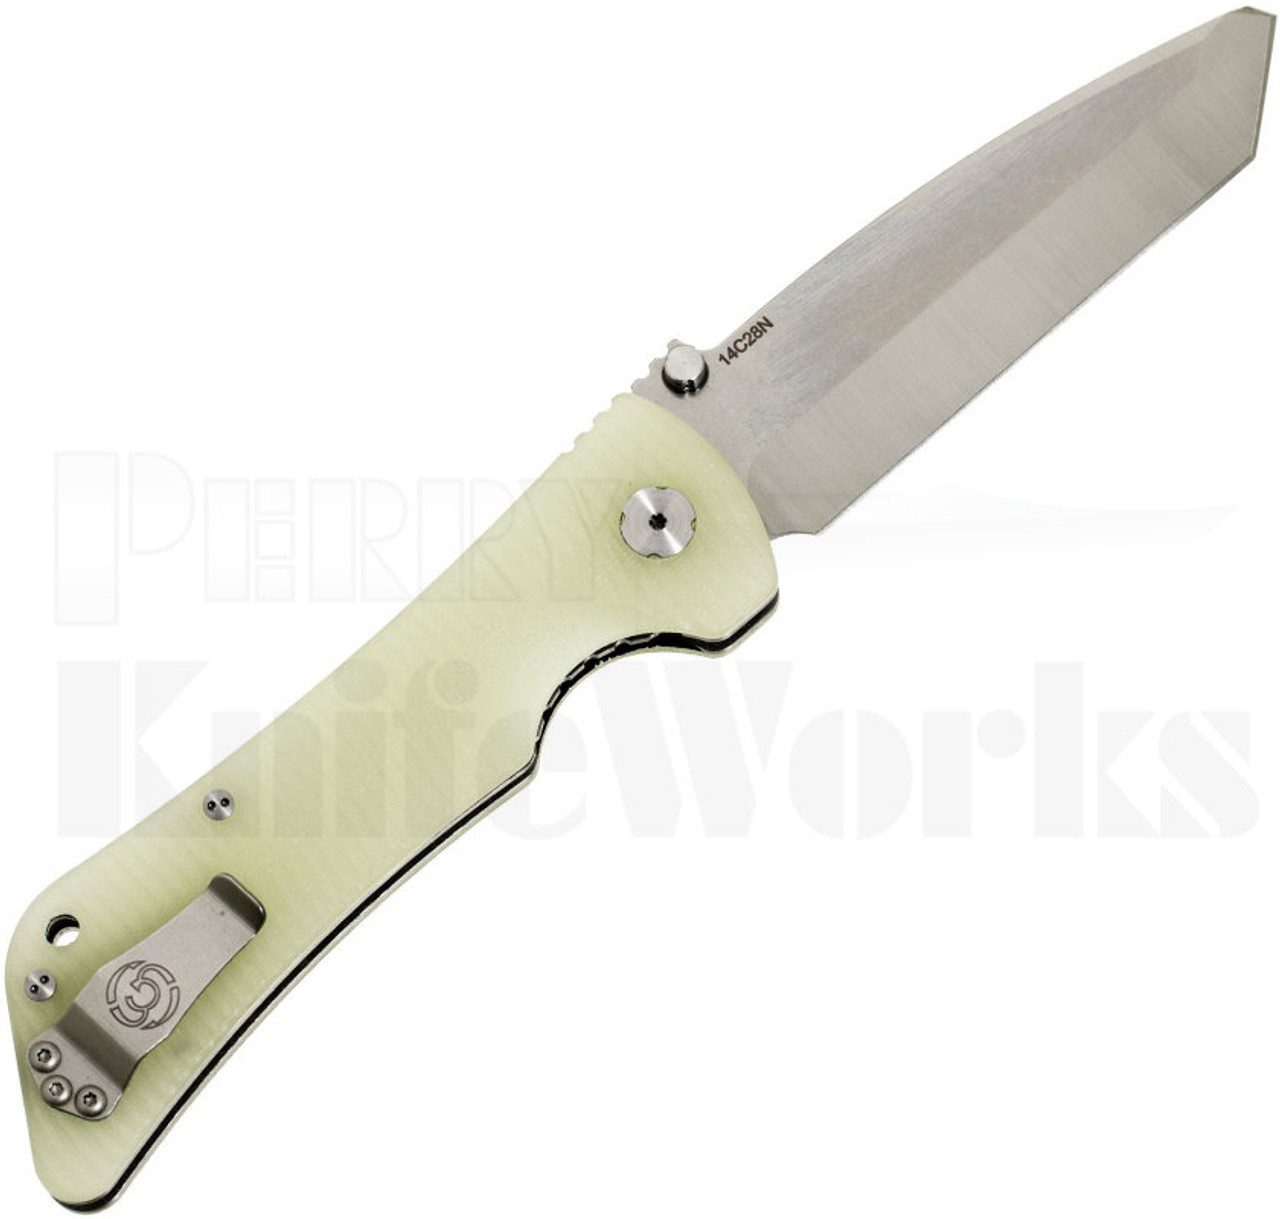 Southern Grind Bad Monkey Knife Jade Green G10 l Satin Tanto Blade l For Sale